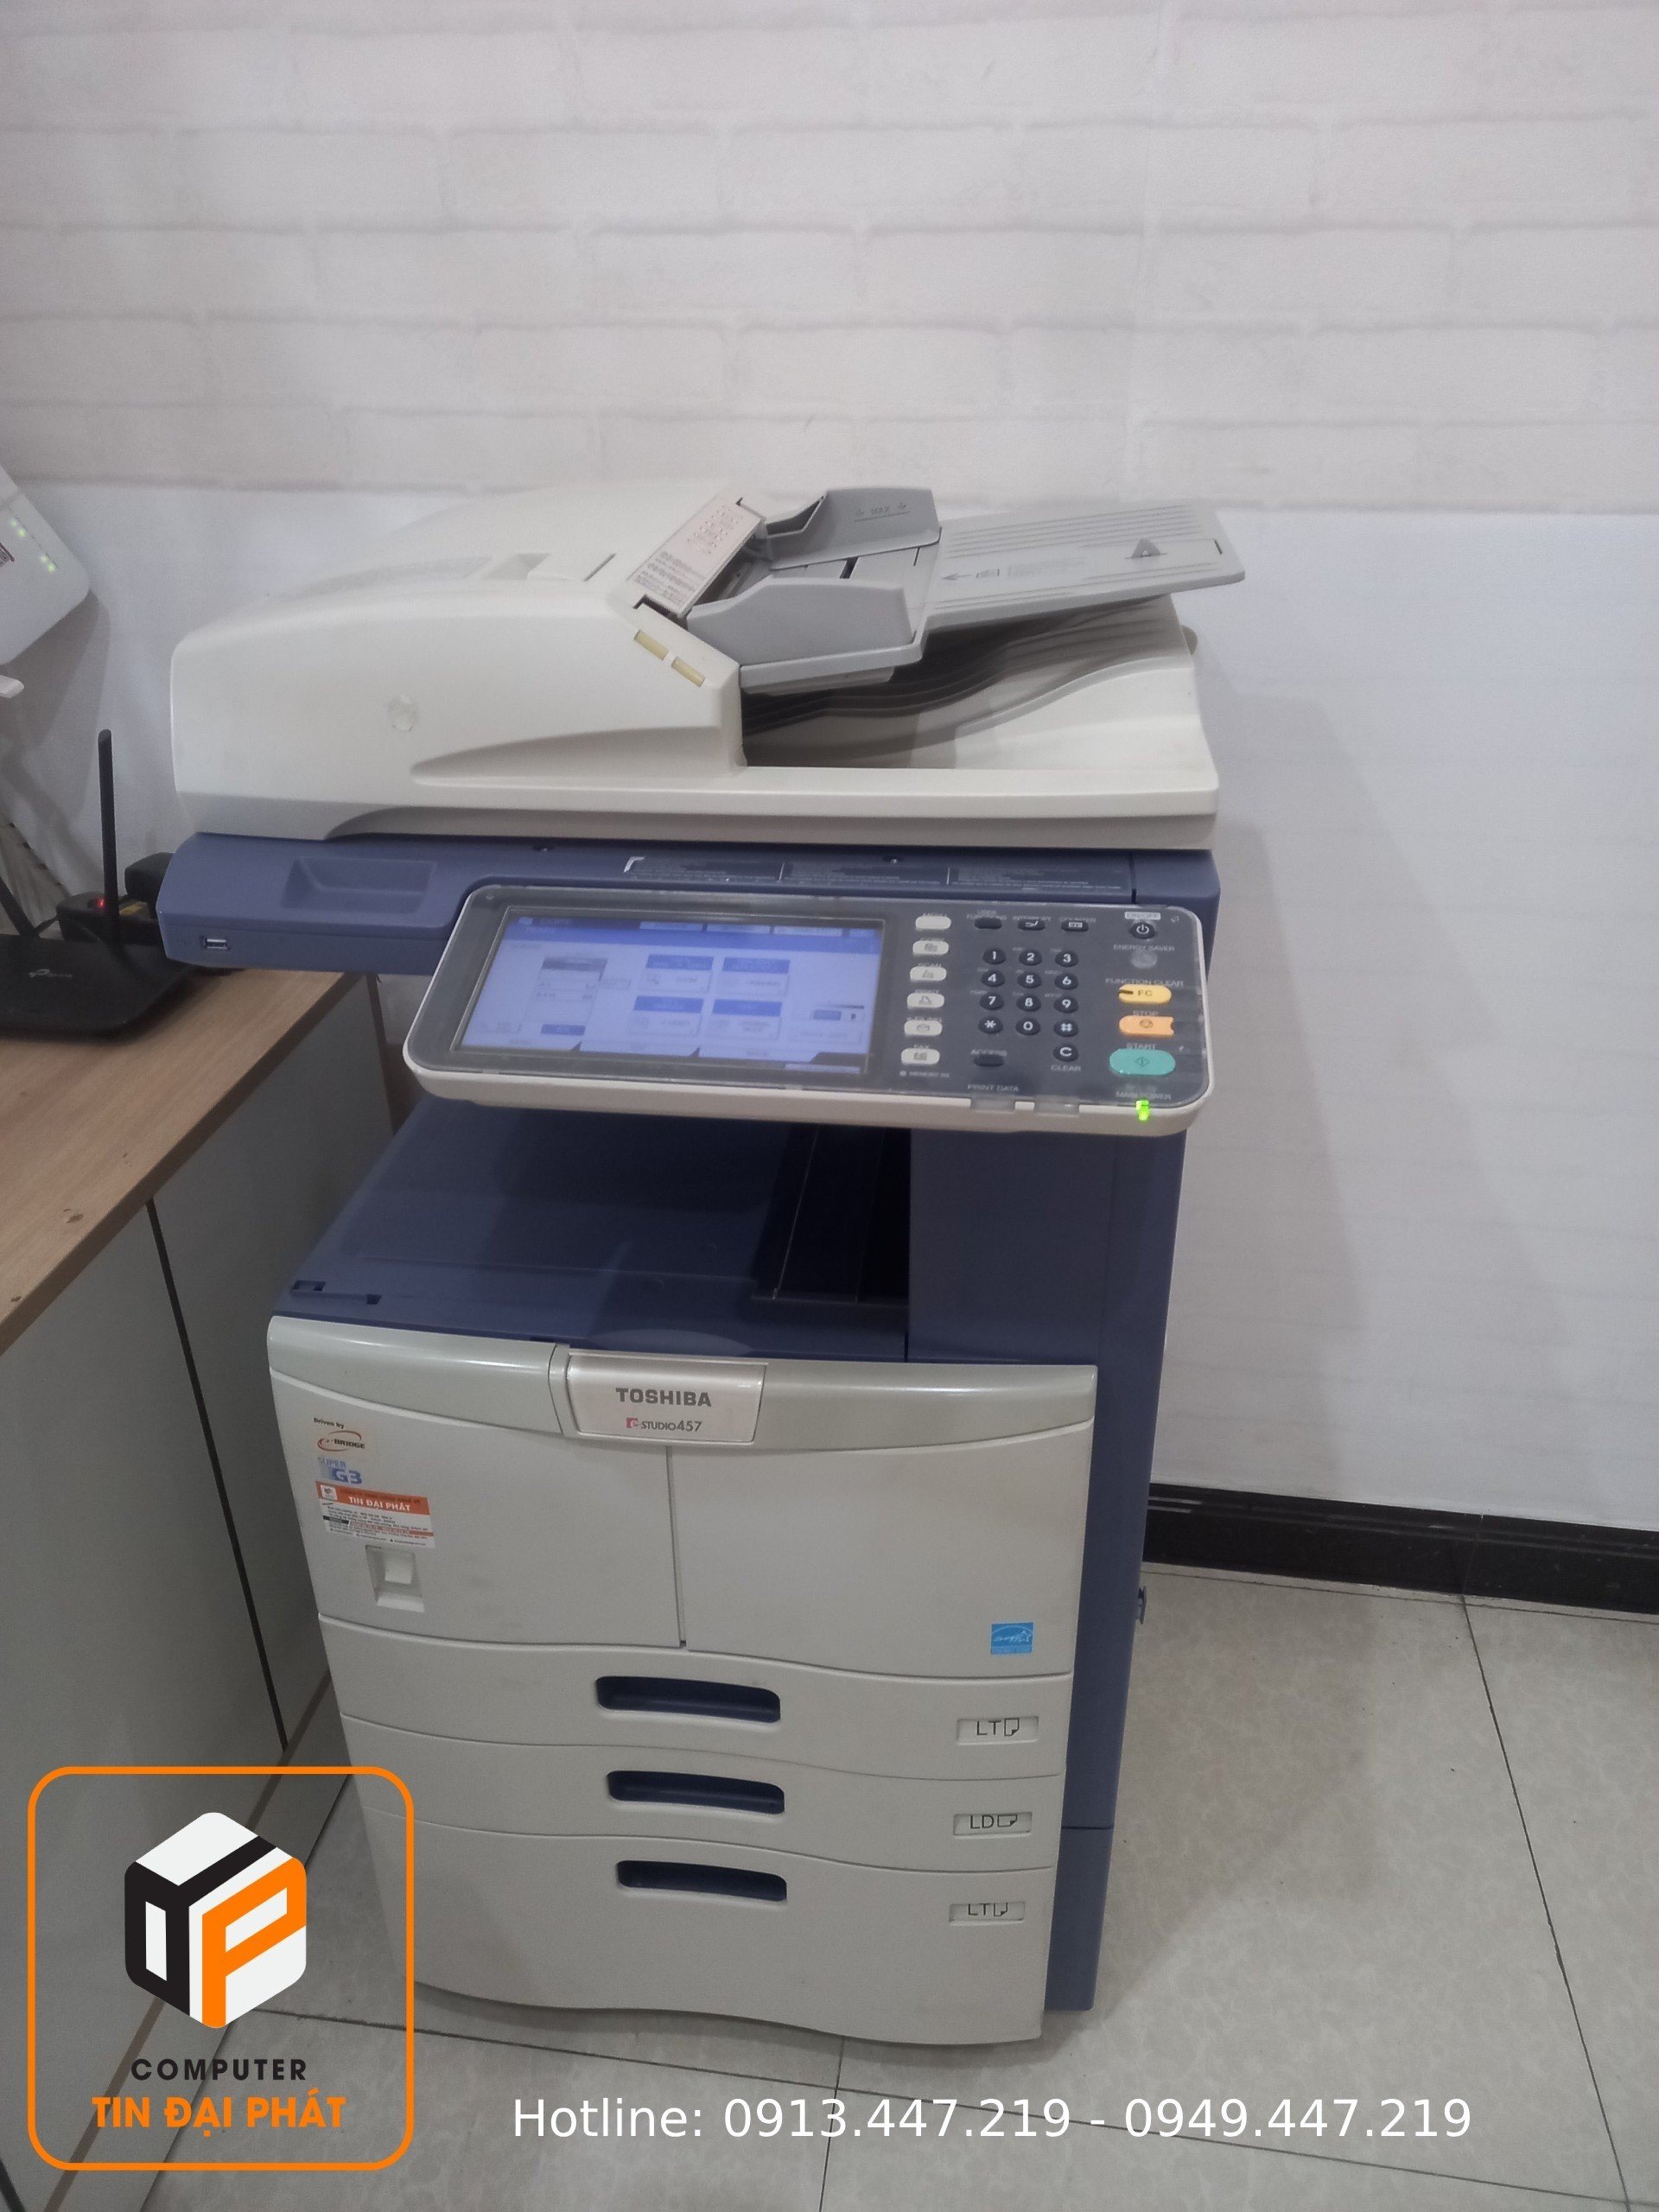 Cửa hàng Cho thuê máy Photocopy Đồng Nai